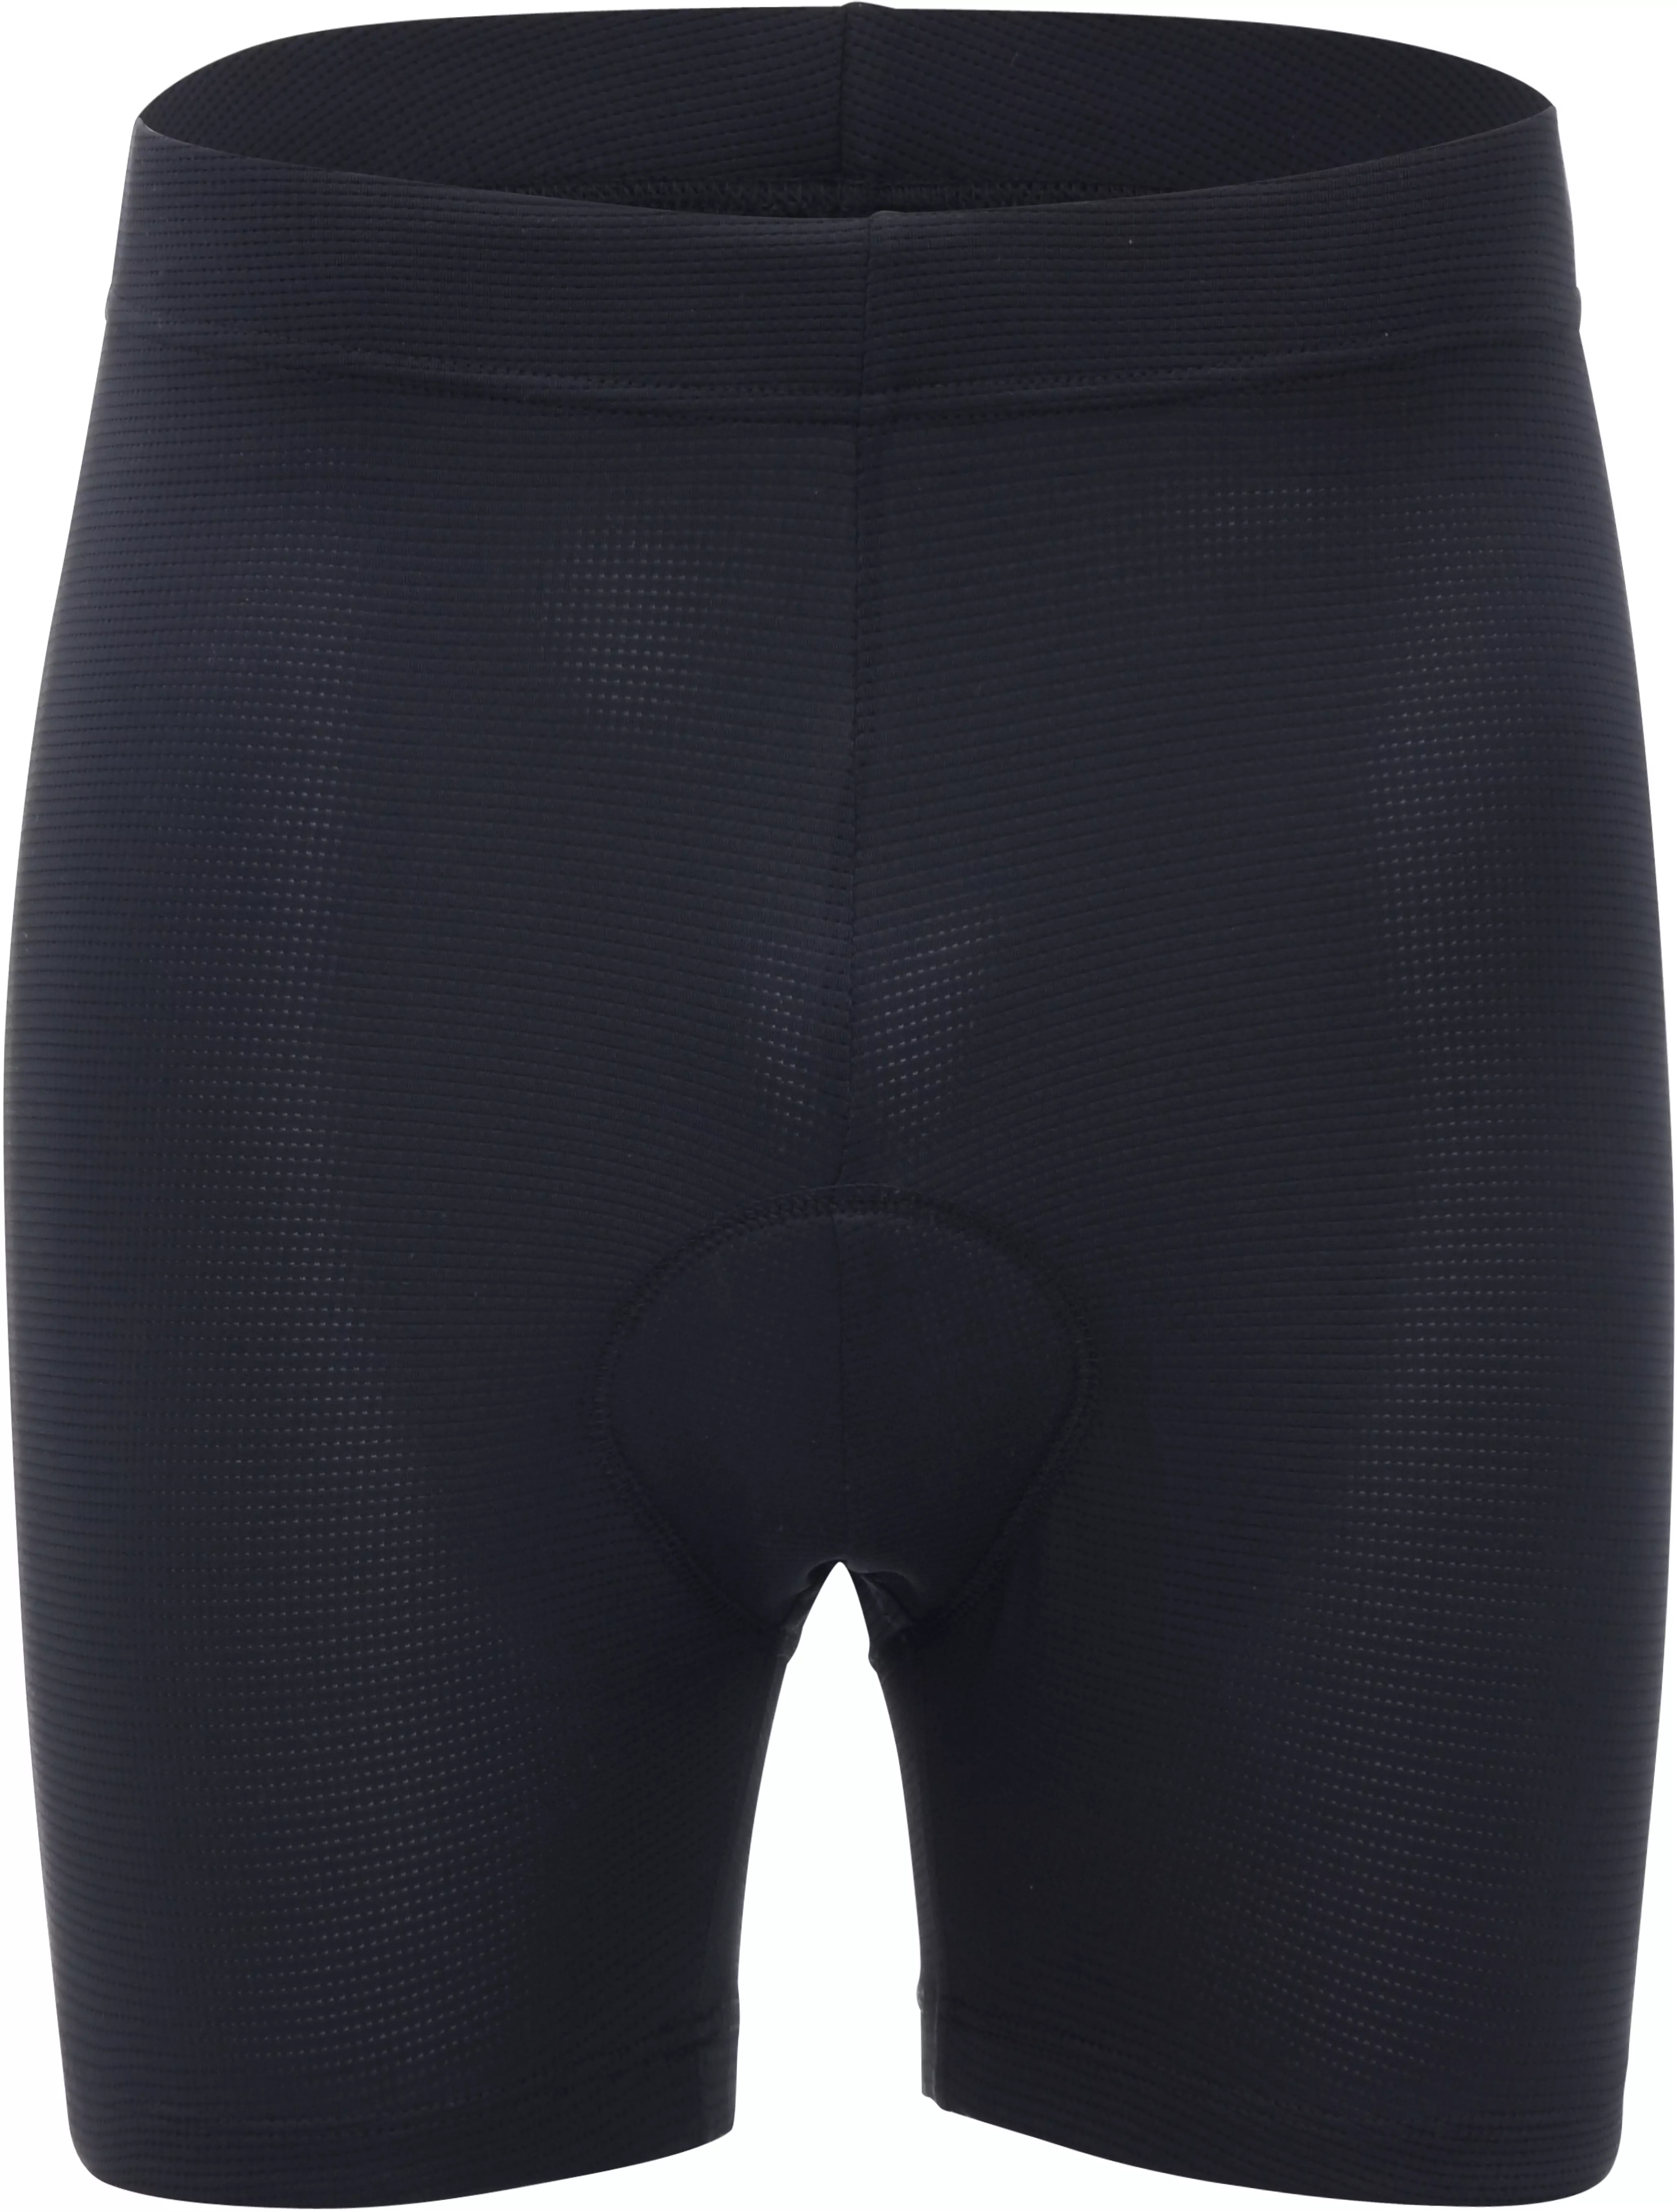 mens cycling shorts padded uk